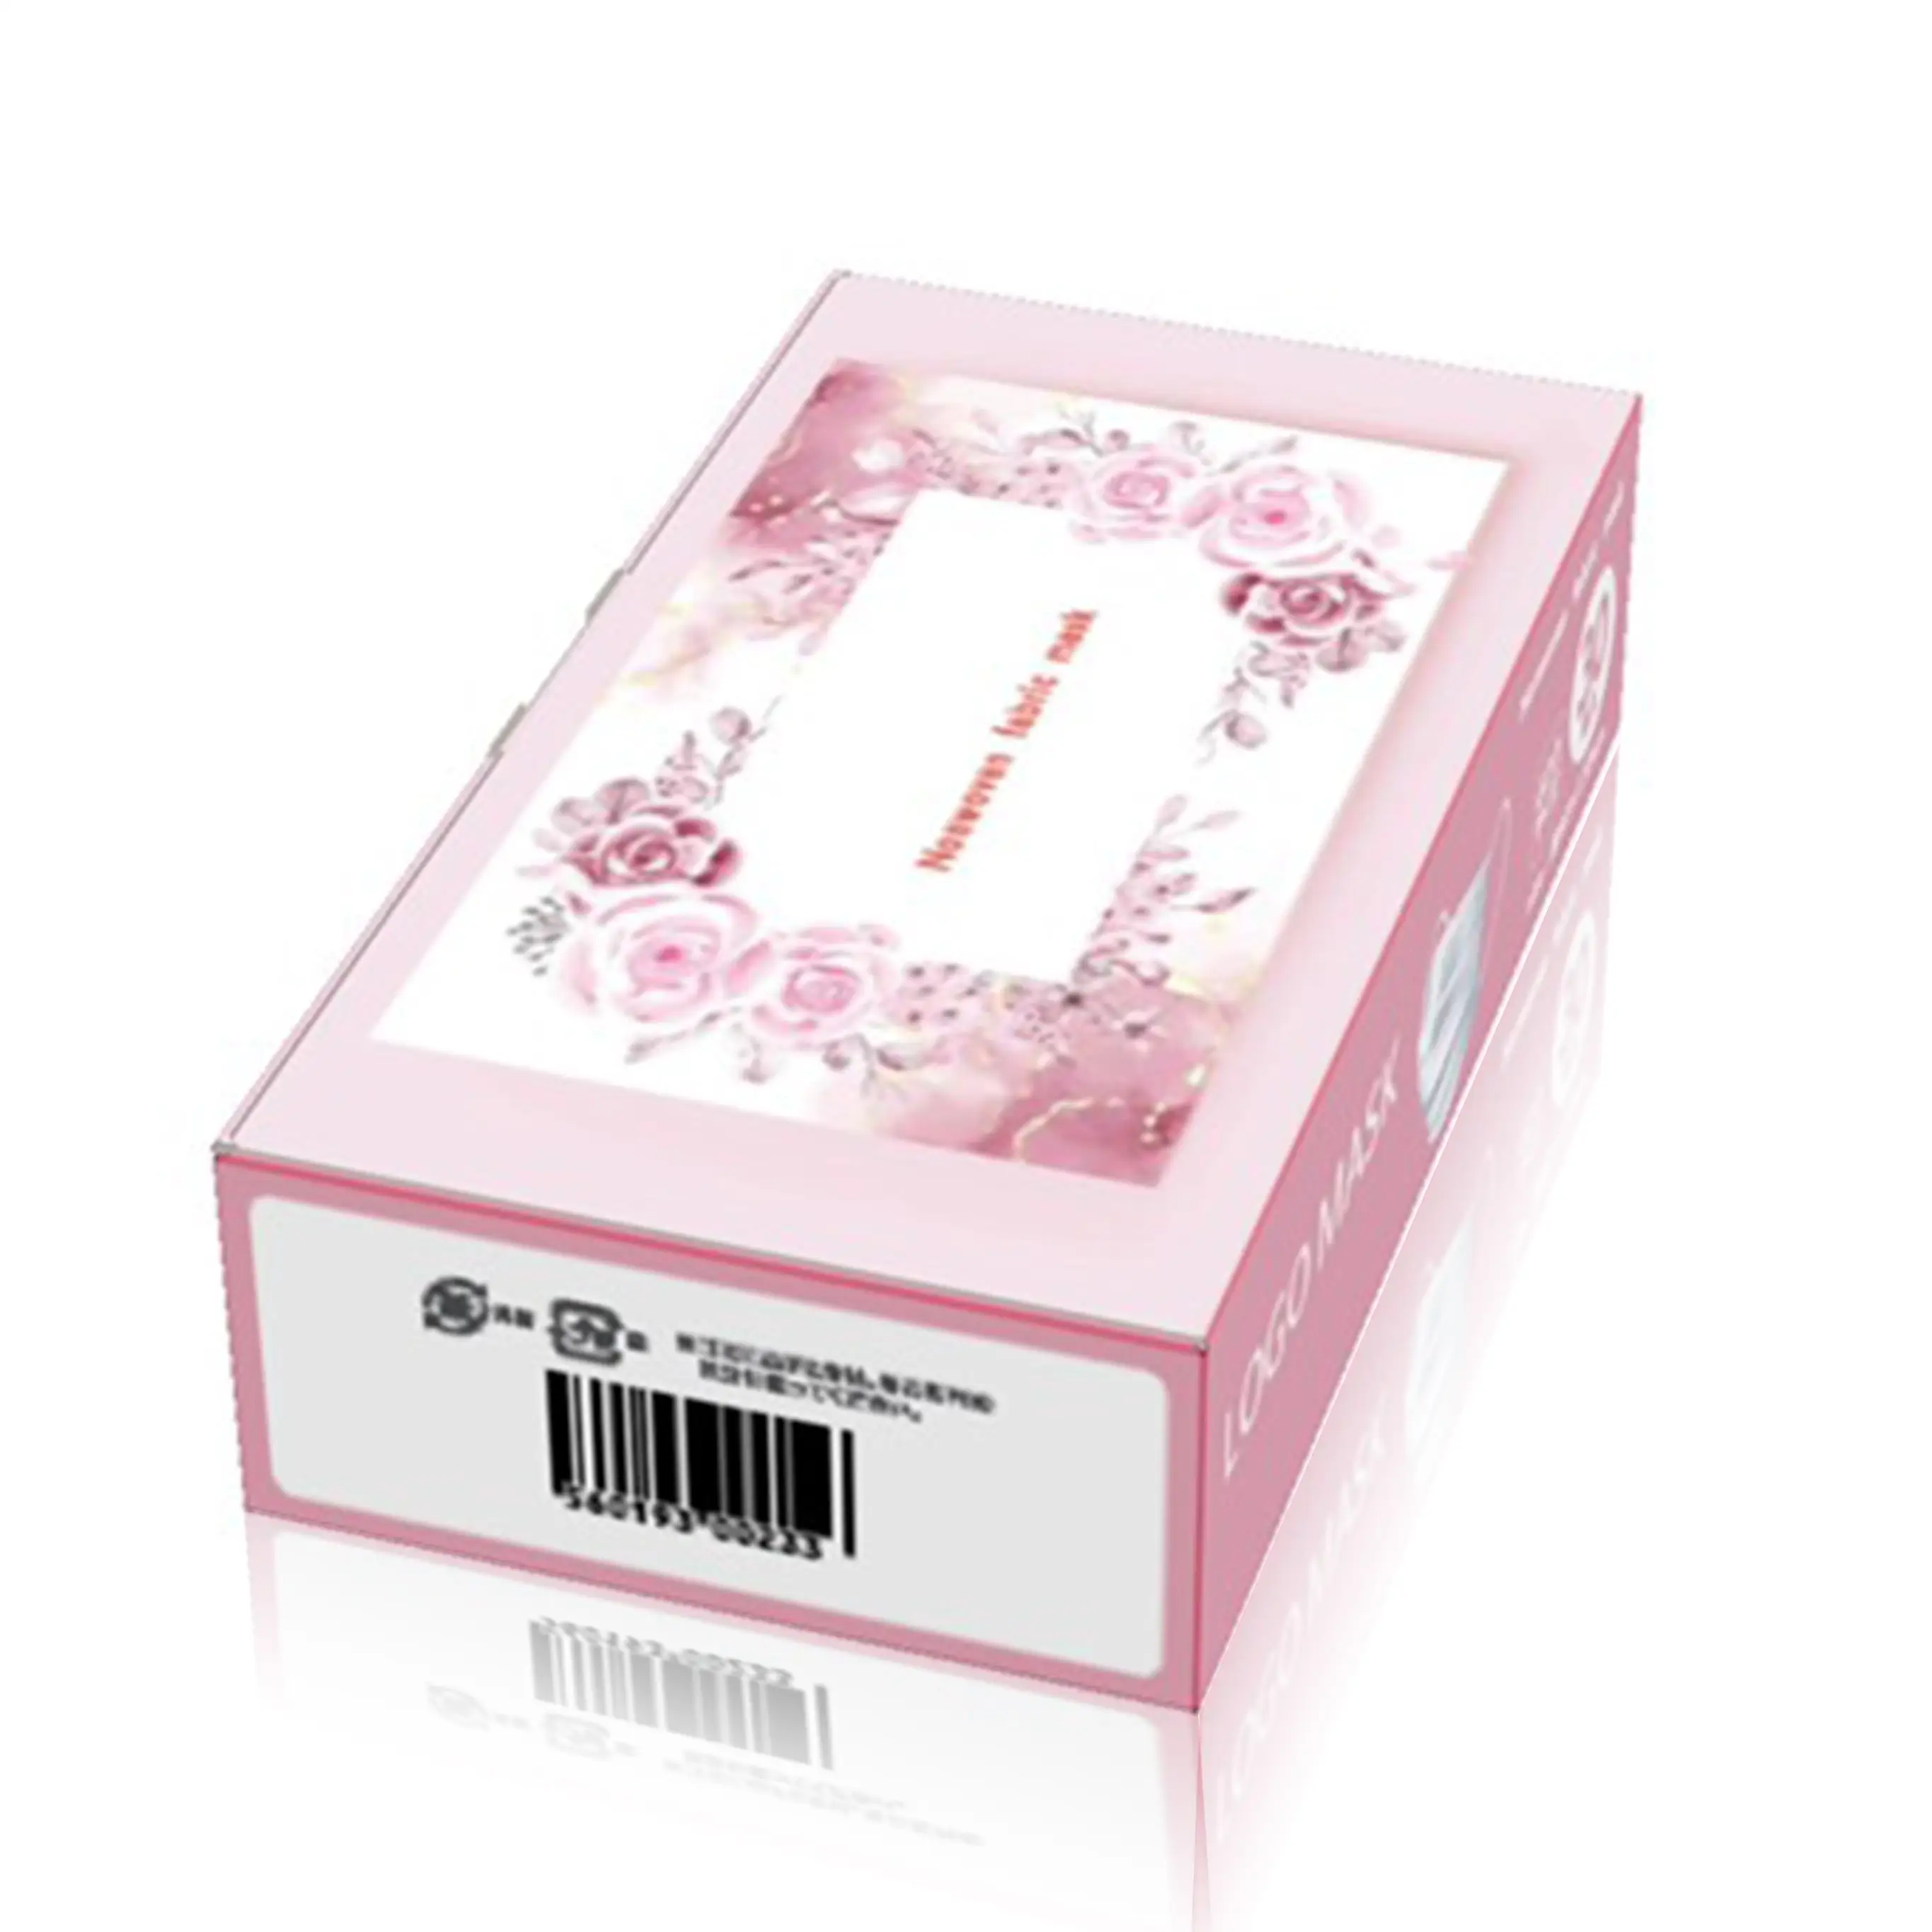 Бумажная коробка для маски 160x100x45 см Индивидуальная упаковочная коробка Высокое качество лучшие продукты картонные коробки экспорт из Вьетнама на заказ B002